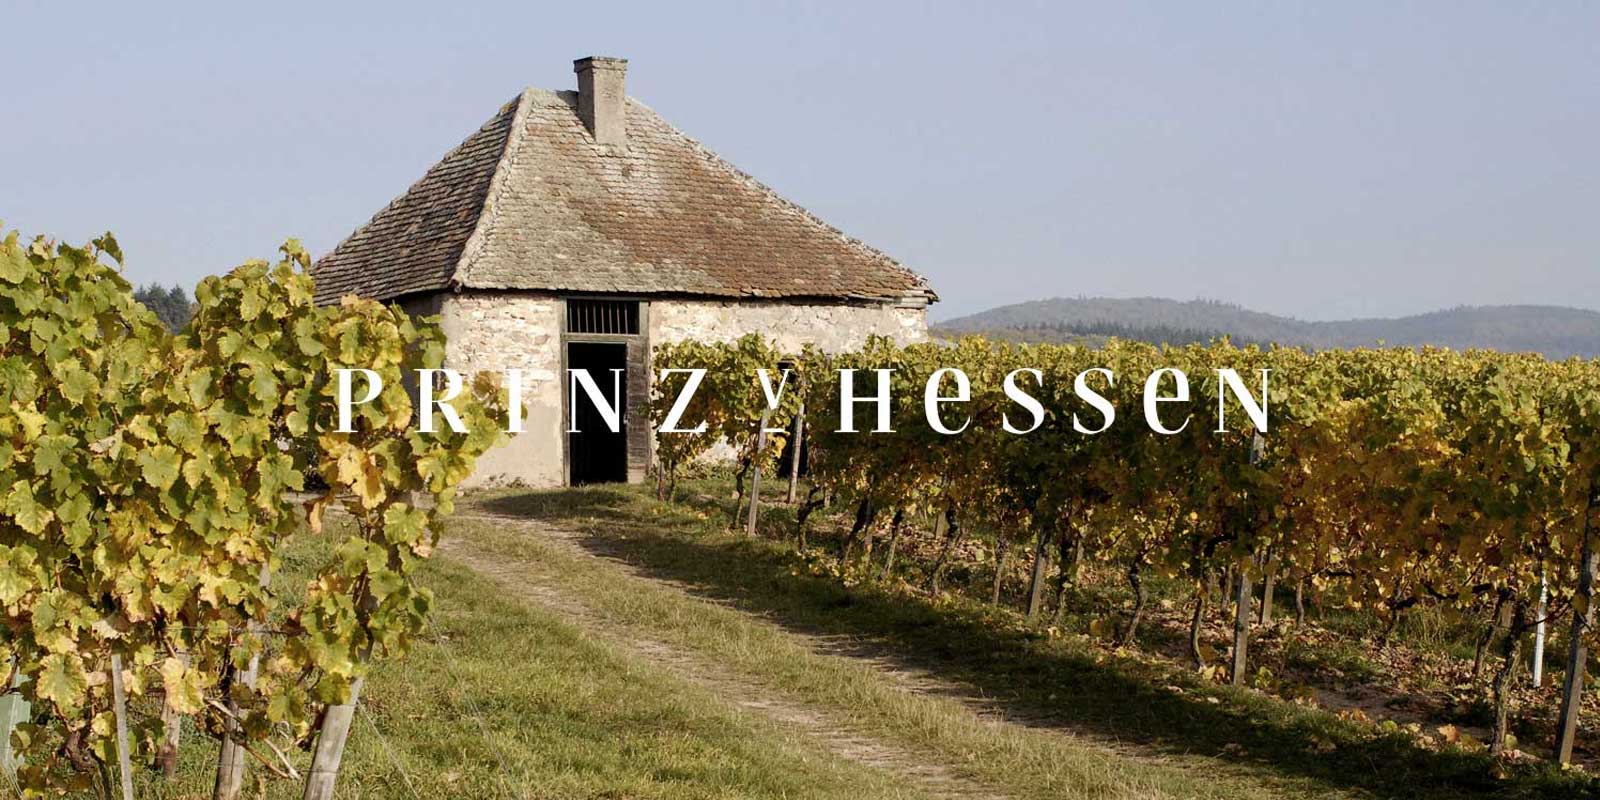 Prince of Hessen vingard - Rheingau vinregion Vingarden PRINZ VON HESSEN i Johannisberg i Rheingau er en av de fremragende Riesling-produsentene i Tyskland og er et VDP-grunnlegger av Rheingau regionale forening. Tallrike anerkjennelser i inn- og utland gjenspeiler vingarden PRINZ VON HESSEN, som er pa toppniva. Viner og musserende viner fra vingarden PRINZ VON HESSEN har vunnet mange priser og mottatt hoeye internasjonale priser.